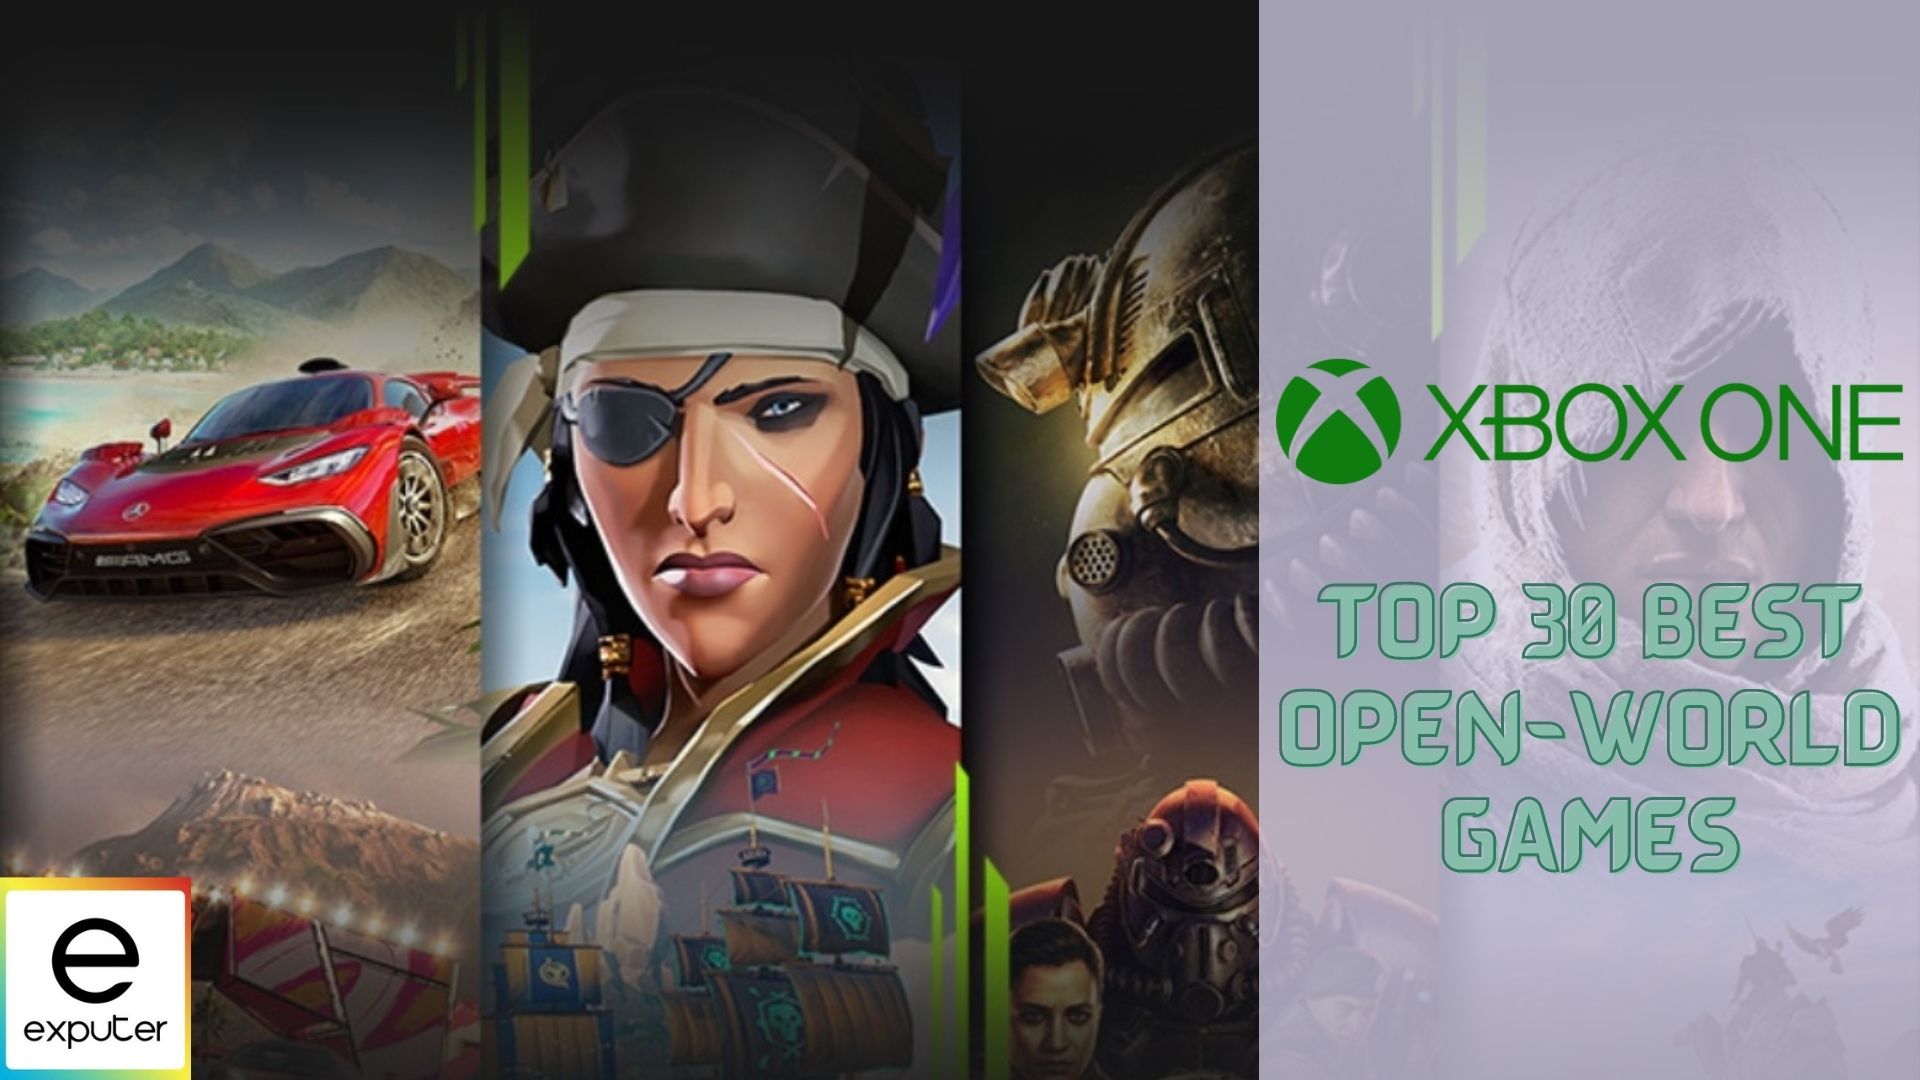 jam Oriëntatiepunt Beeldhouwer 30 BEST Open World Games For Xbox One - eXputer.com